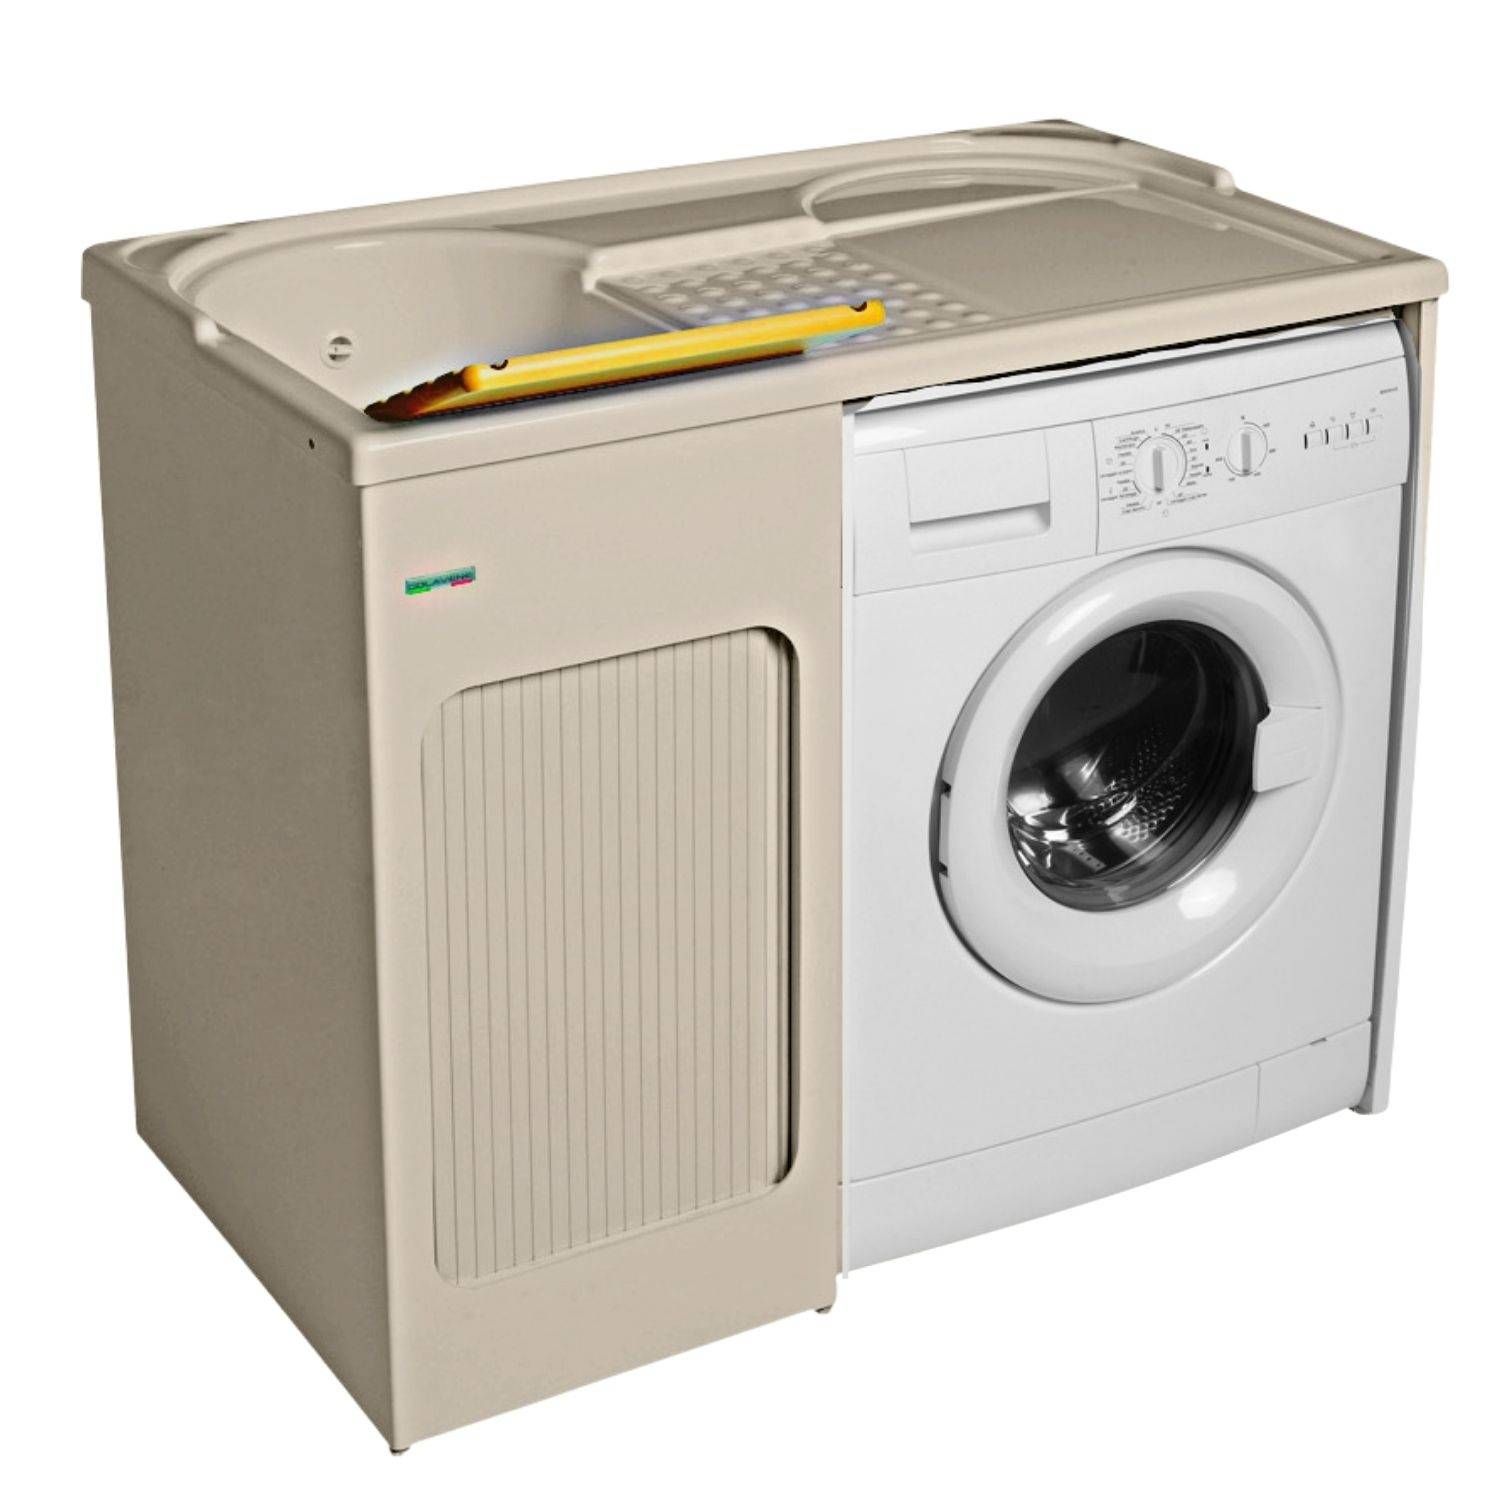 Mobile copri lavatrice 72x68x91h cm con serranda grigio Lavacril Box  Colavene